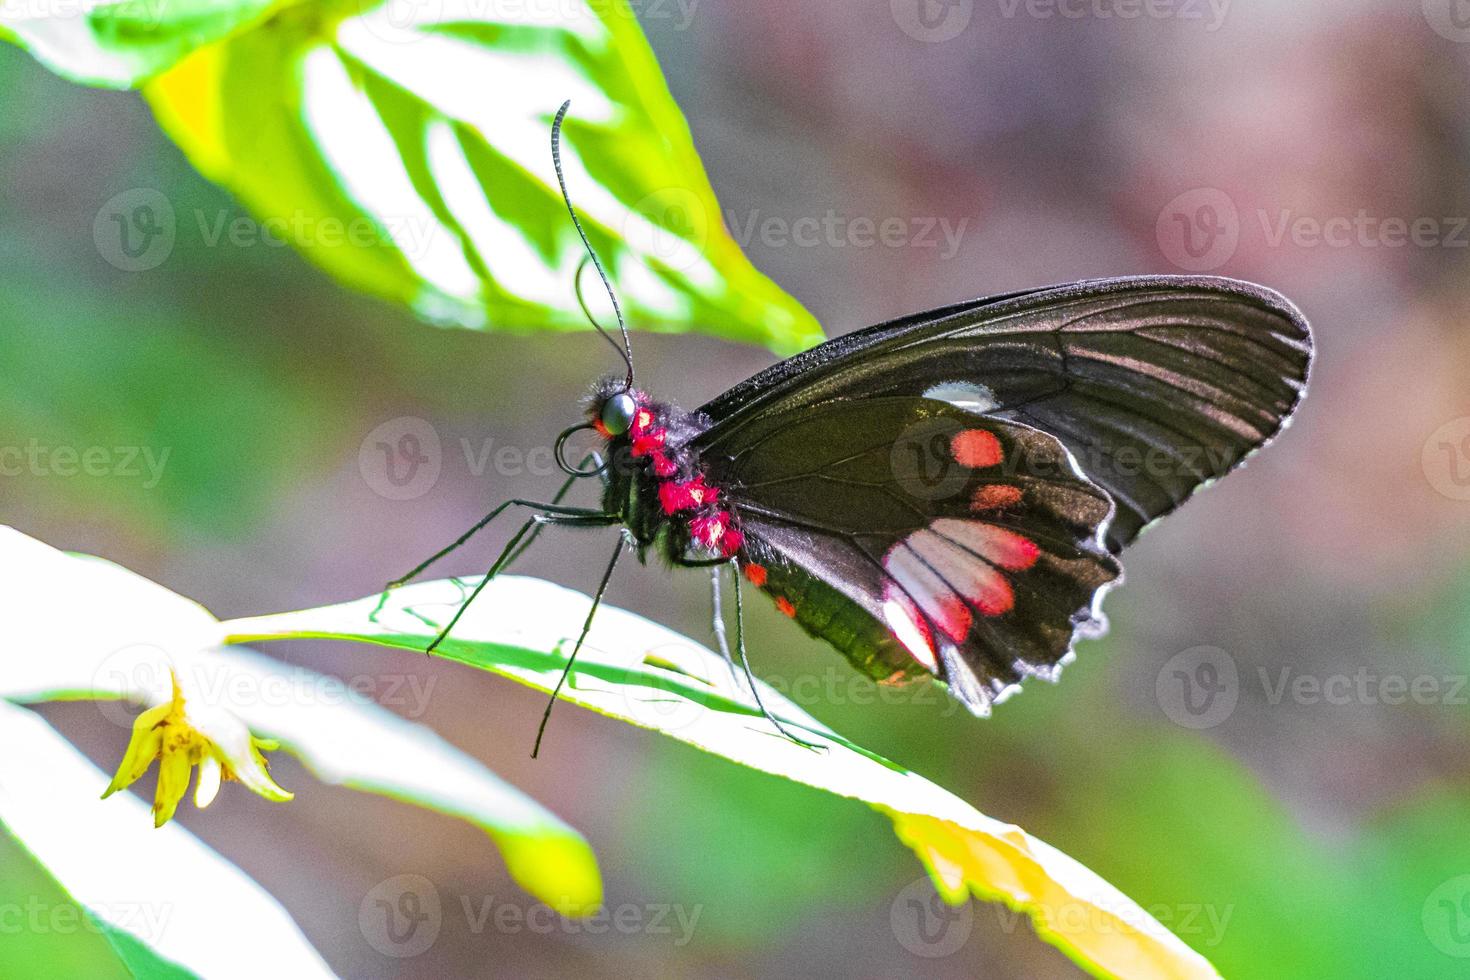 papillon tropical noble rouge noir sur fond vert nature brésil. photo